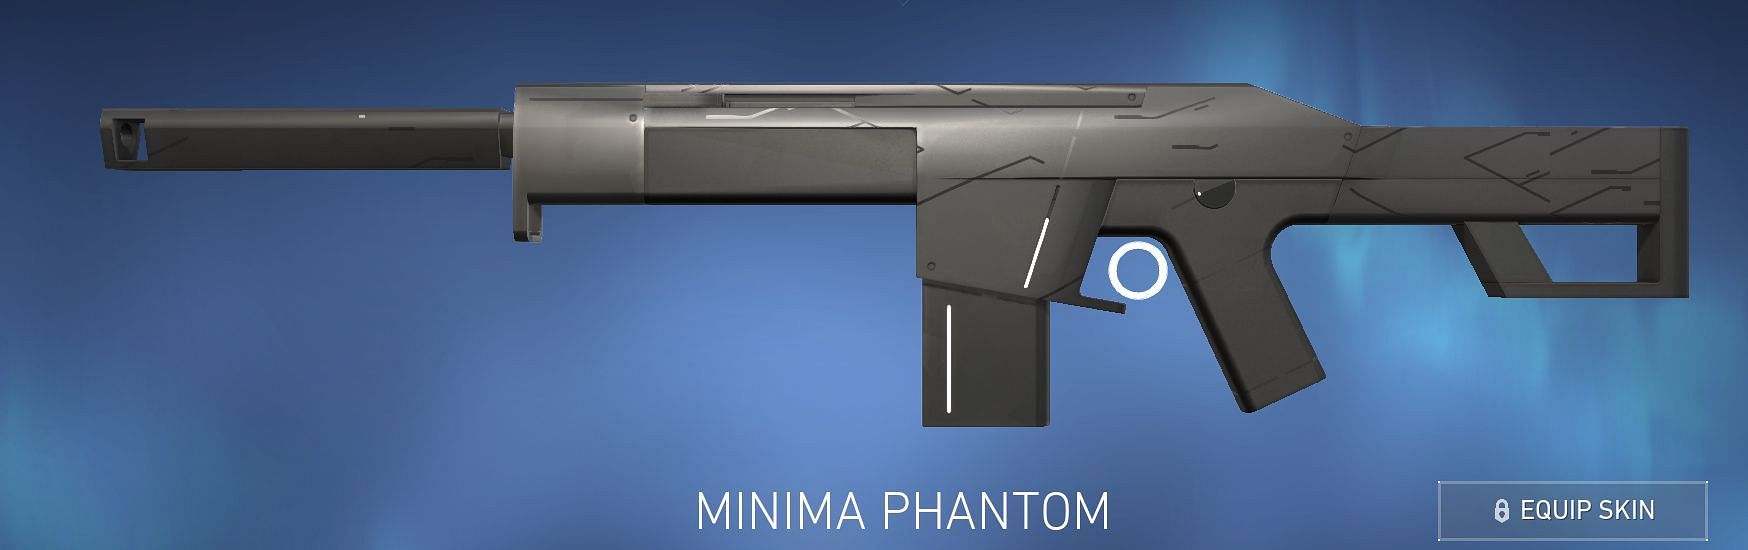 Minima Phantom (Image via Riot Games)